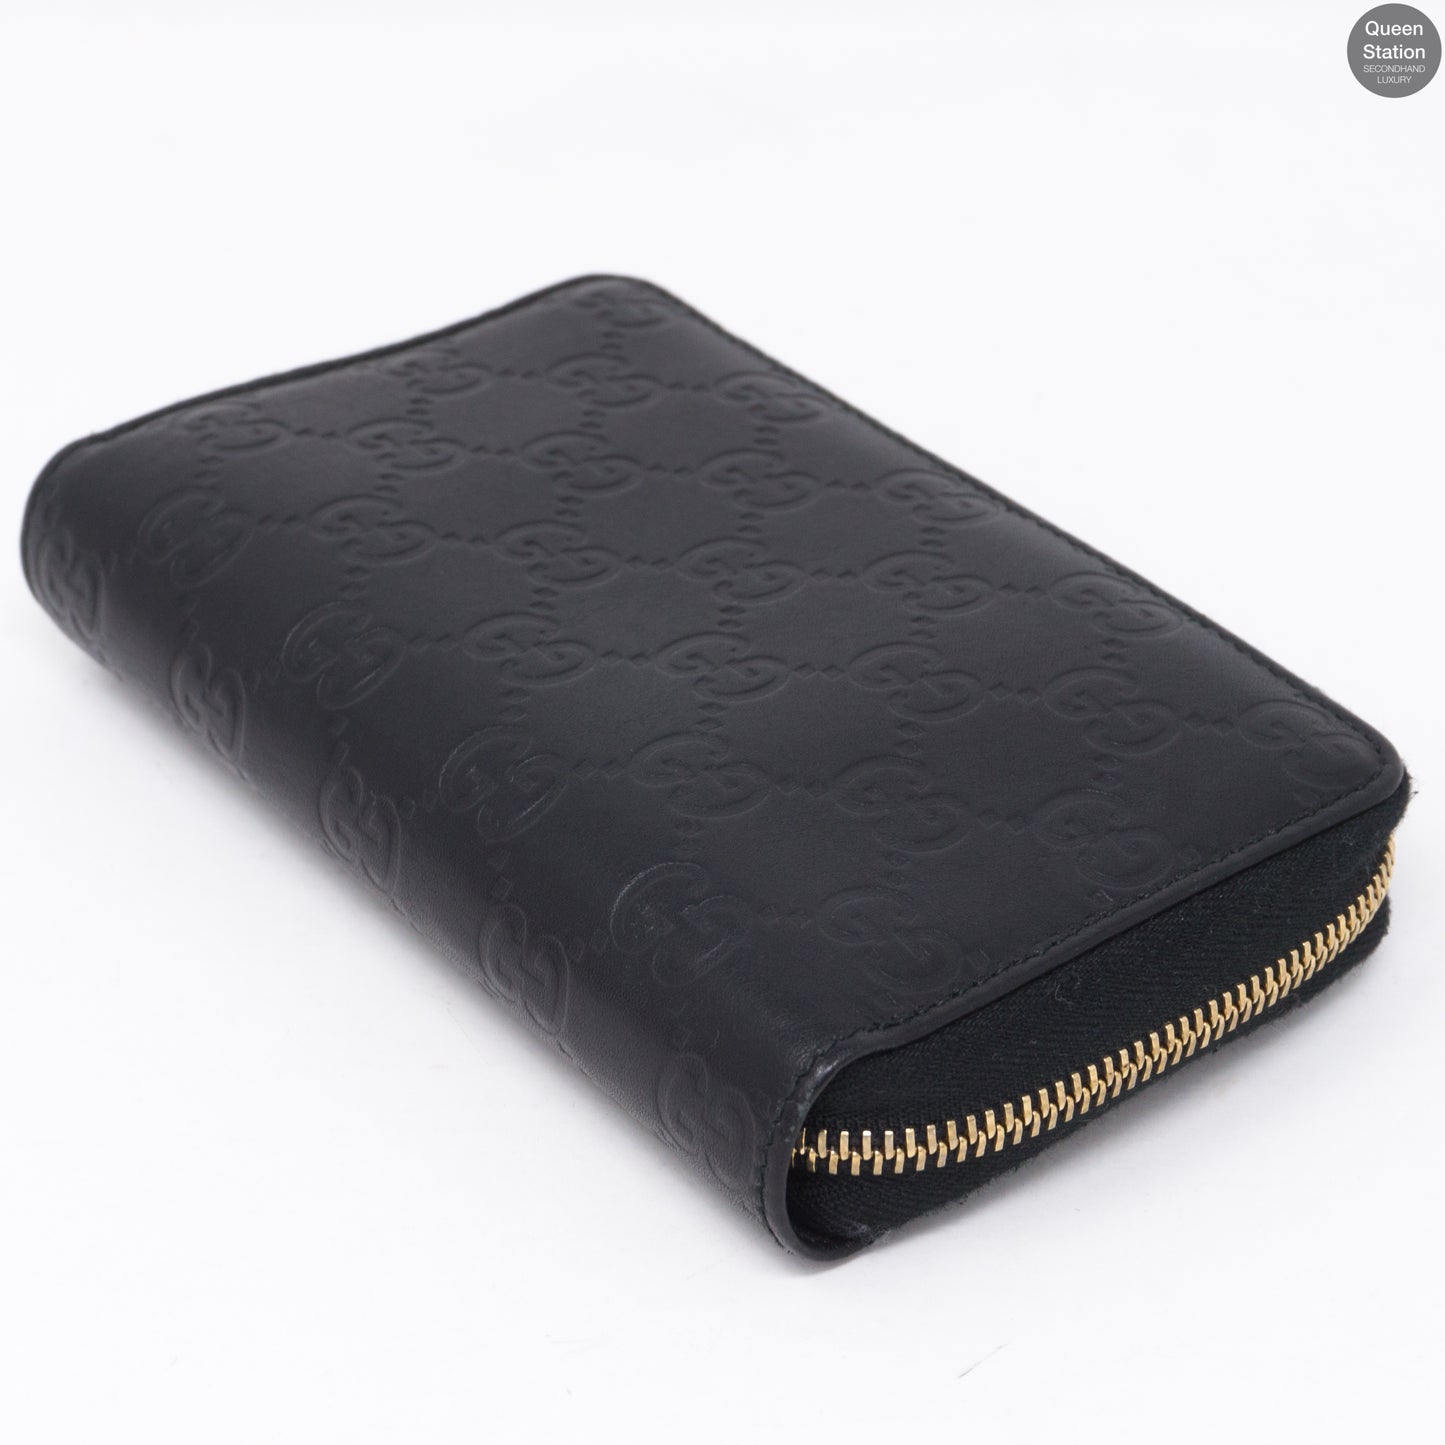 Zip Around Coin Wallet Black Leather